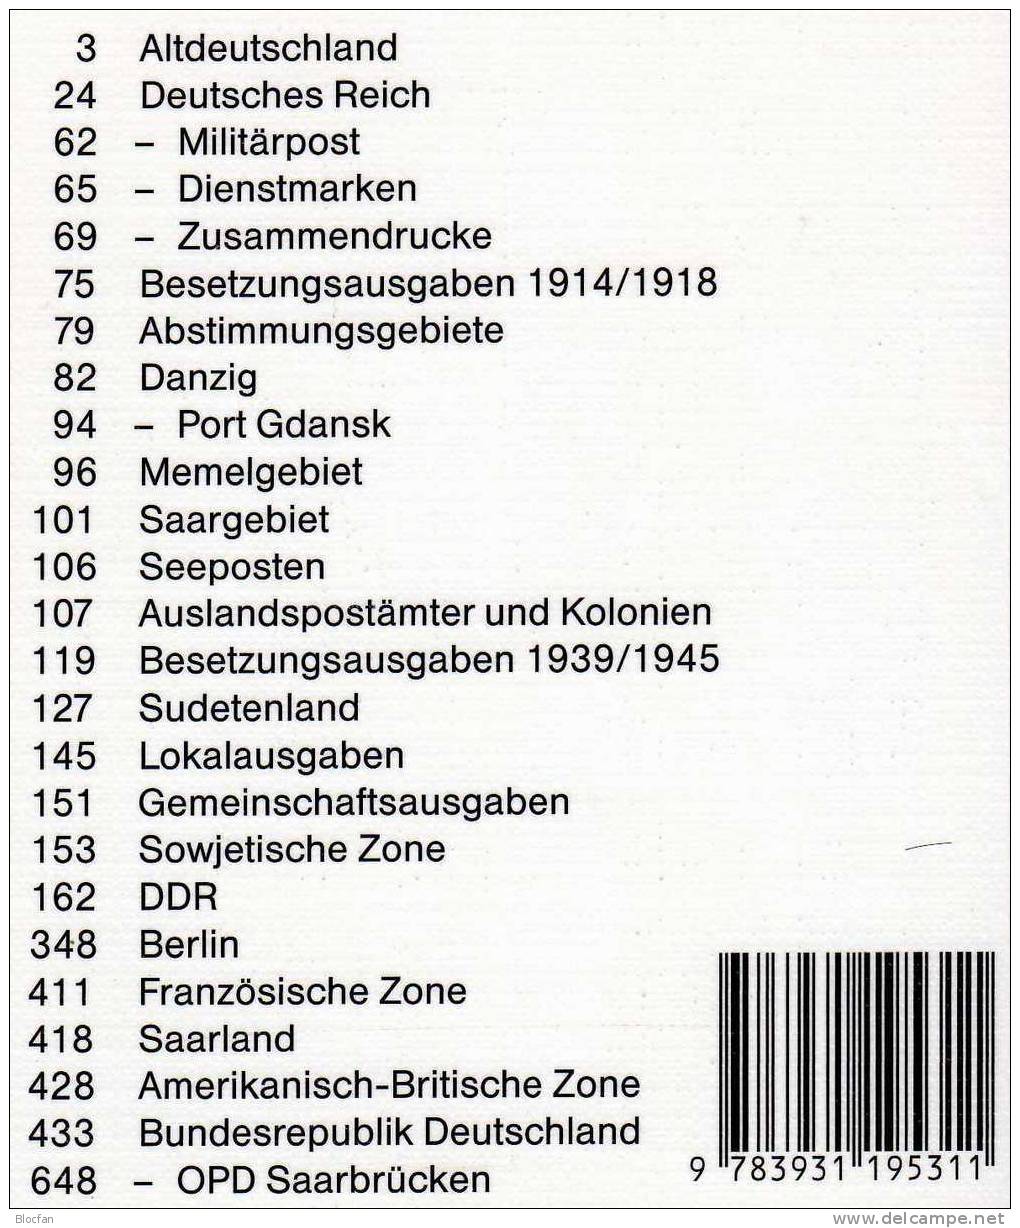 Briefmarken Katalog 2003 Antiquarisch 12€ Philex Altdeutschland Deutsches Reich Saar Danzig Memel SBZ DDR Berlin BRD - Deutschland